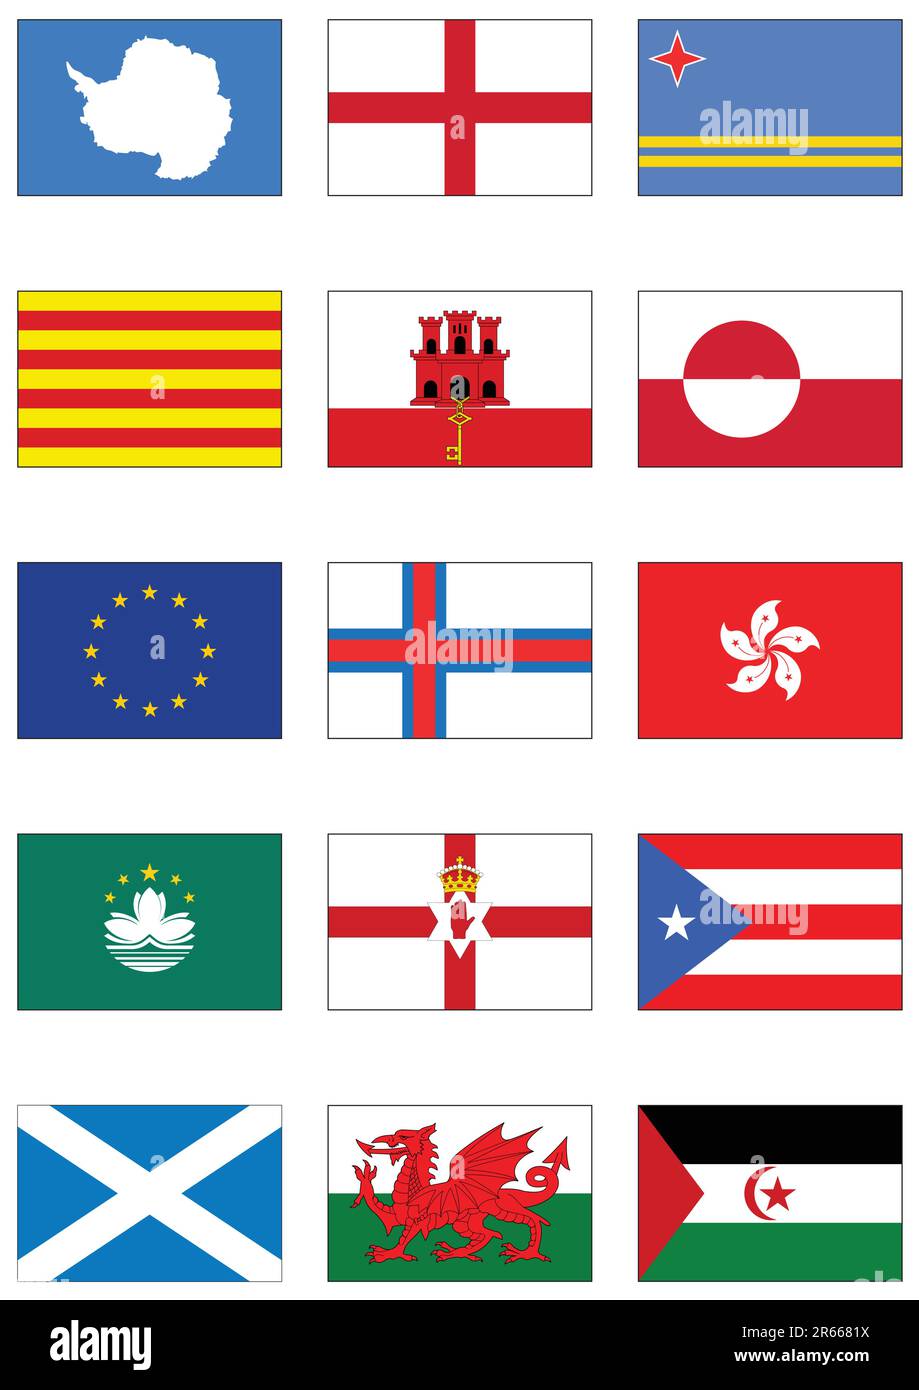 Vollständiger Vektorsatz von Flaggen aus Australien und Ozeanien. Alle Objekte werden gruppiert und mit dem Ländernamen versehen. Stock Vektor